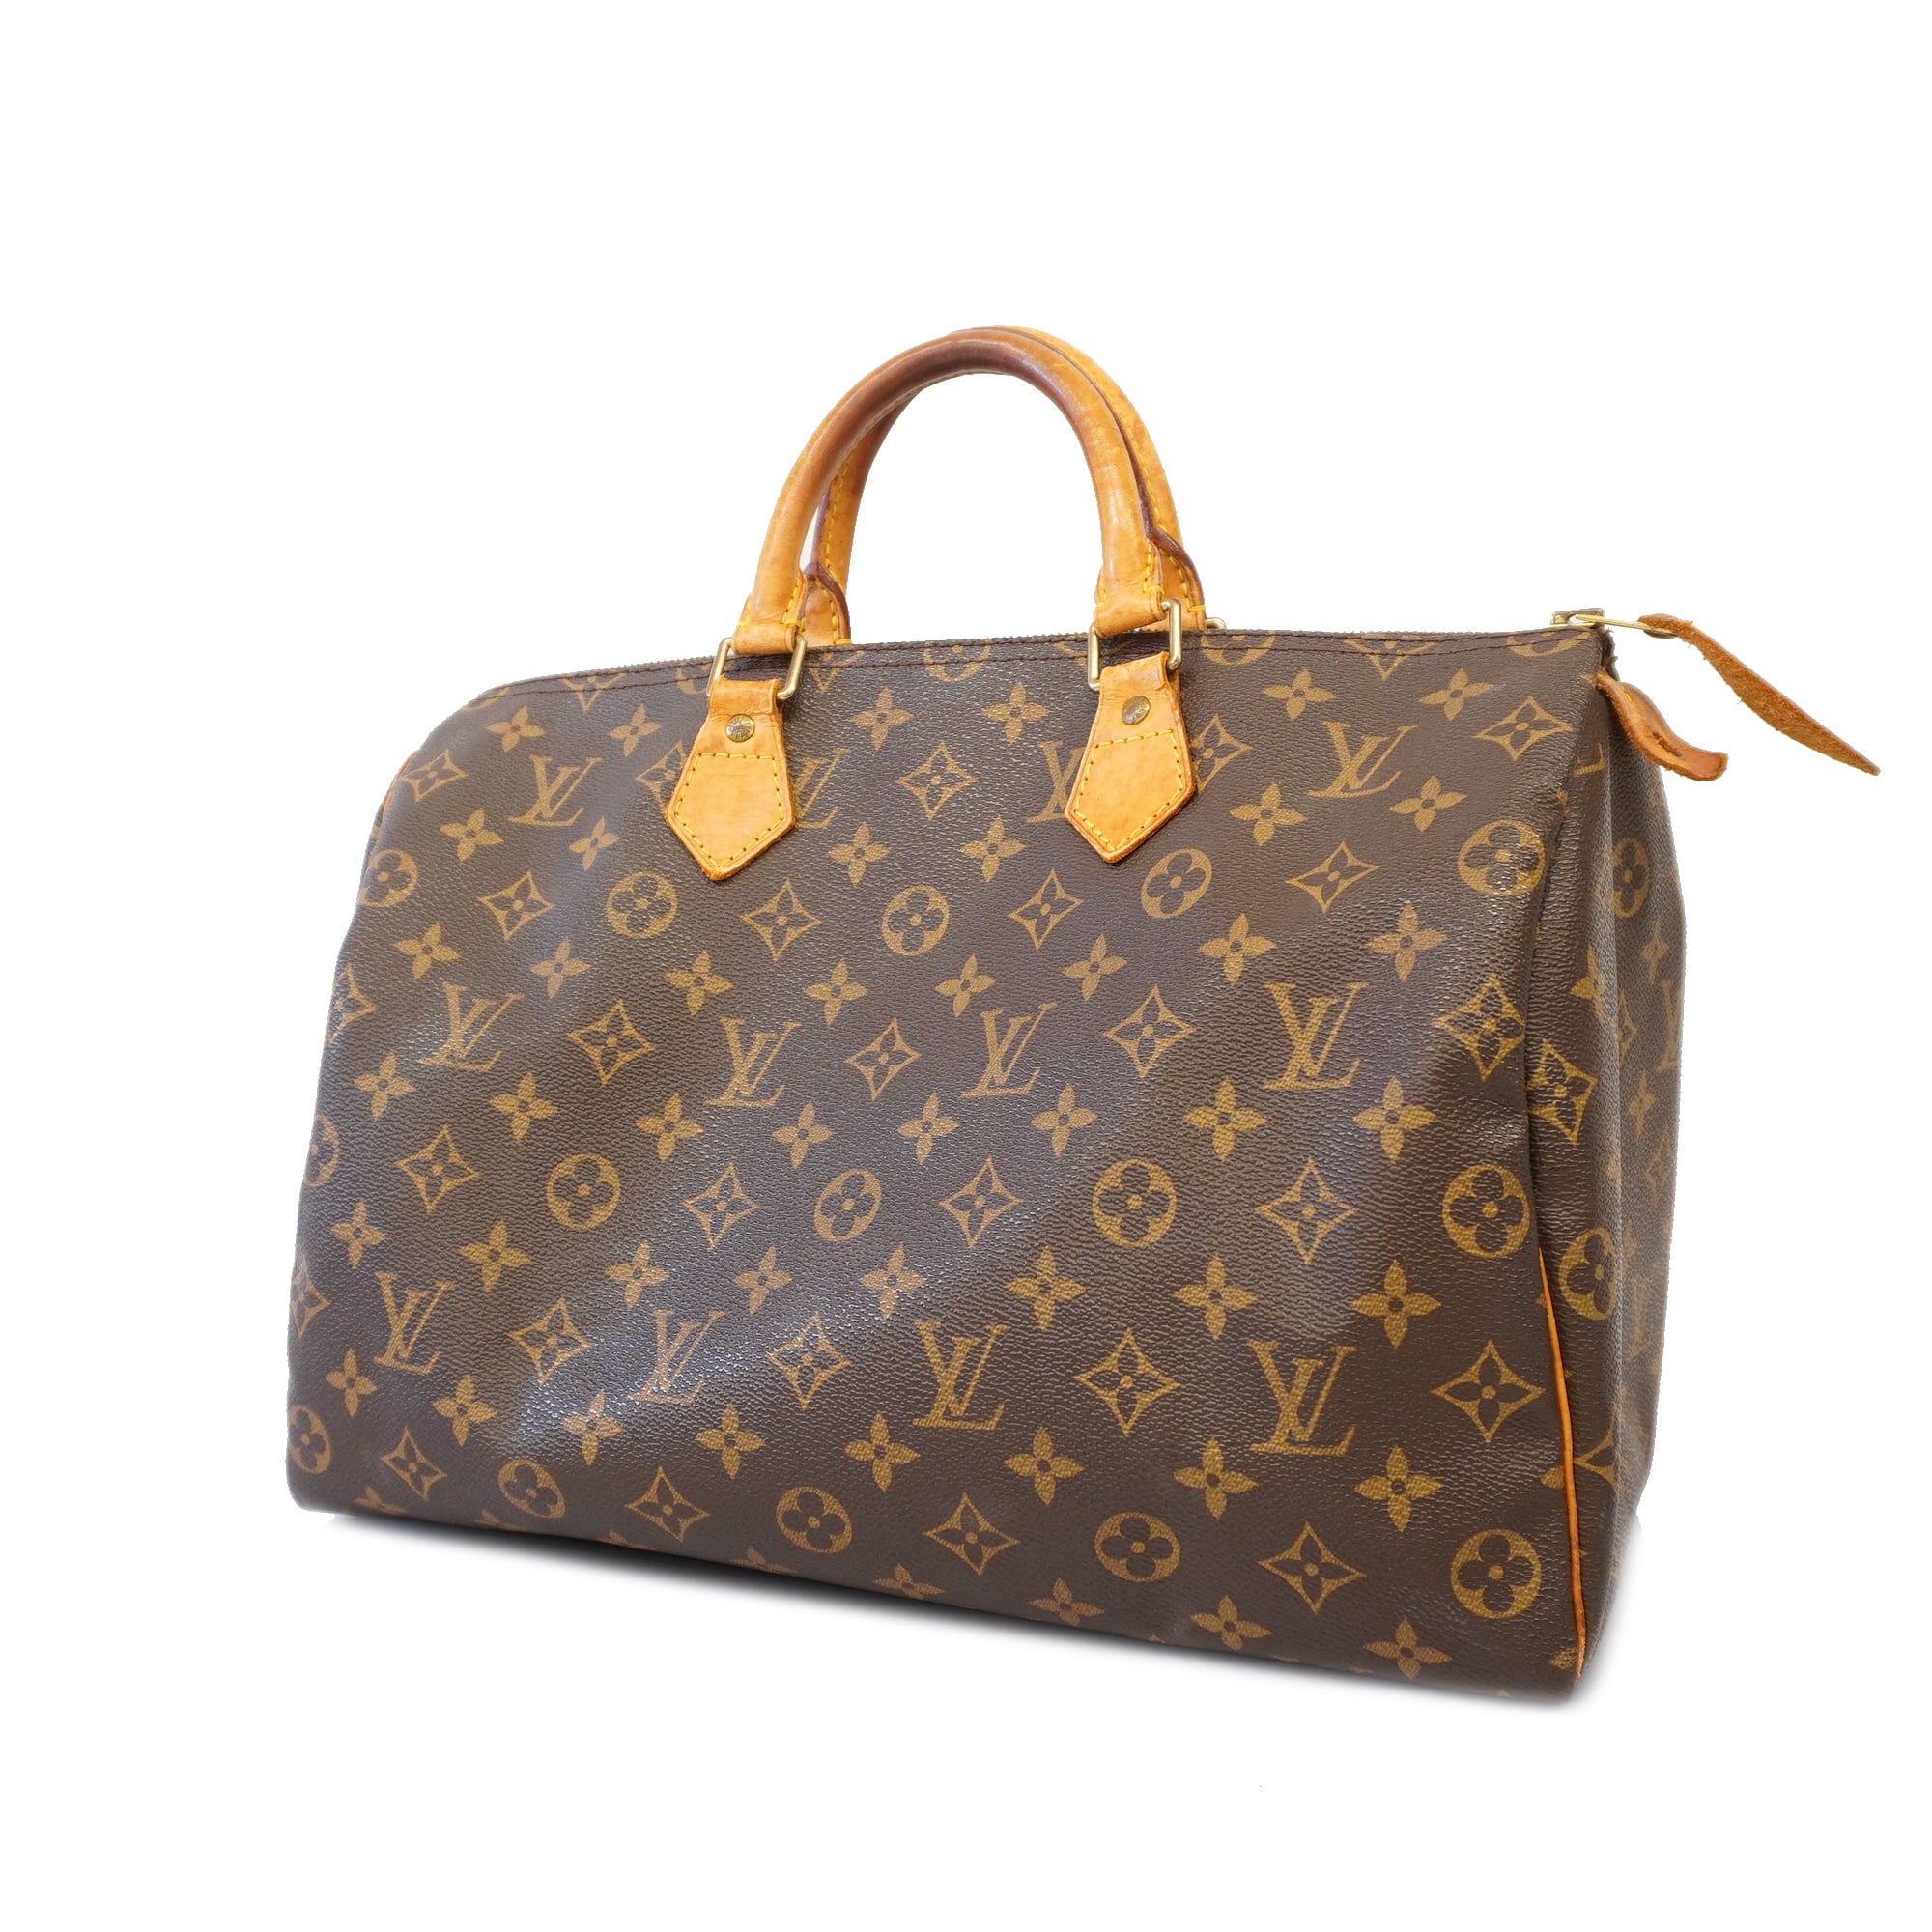 Louis Vuitton Monogram Speedy 35 Boston Bag